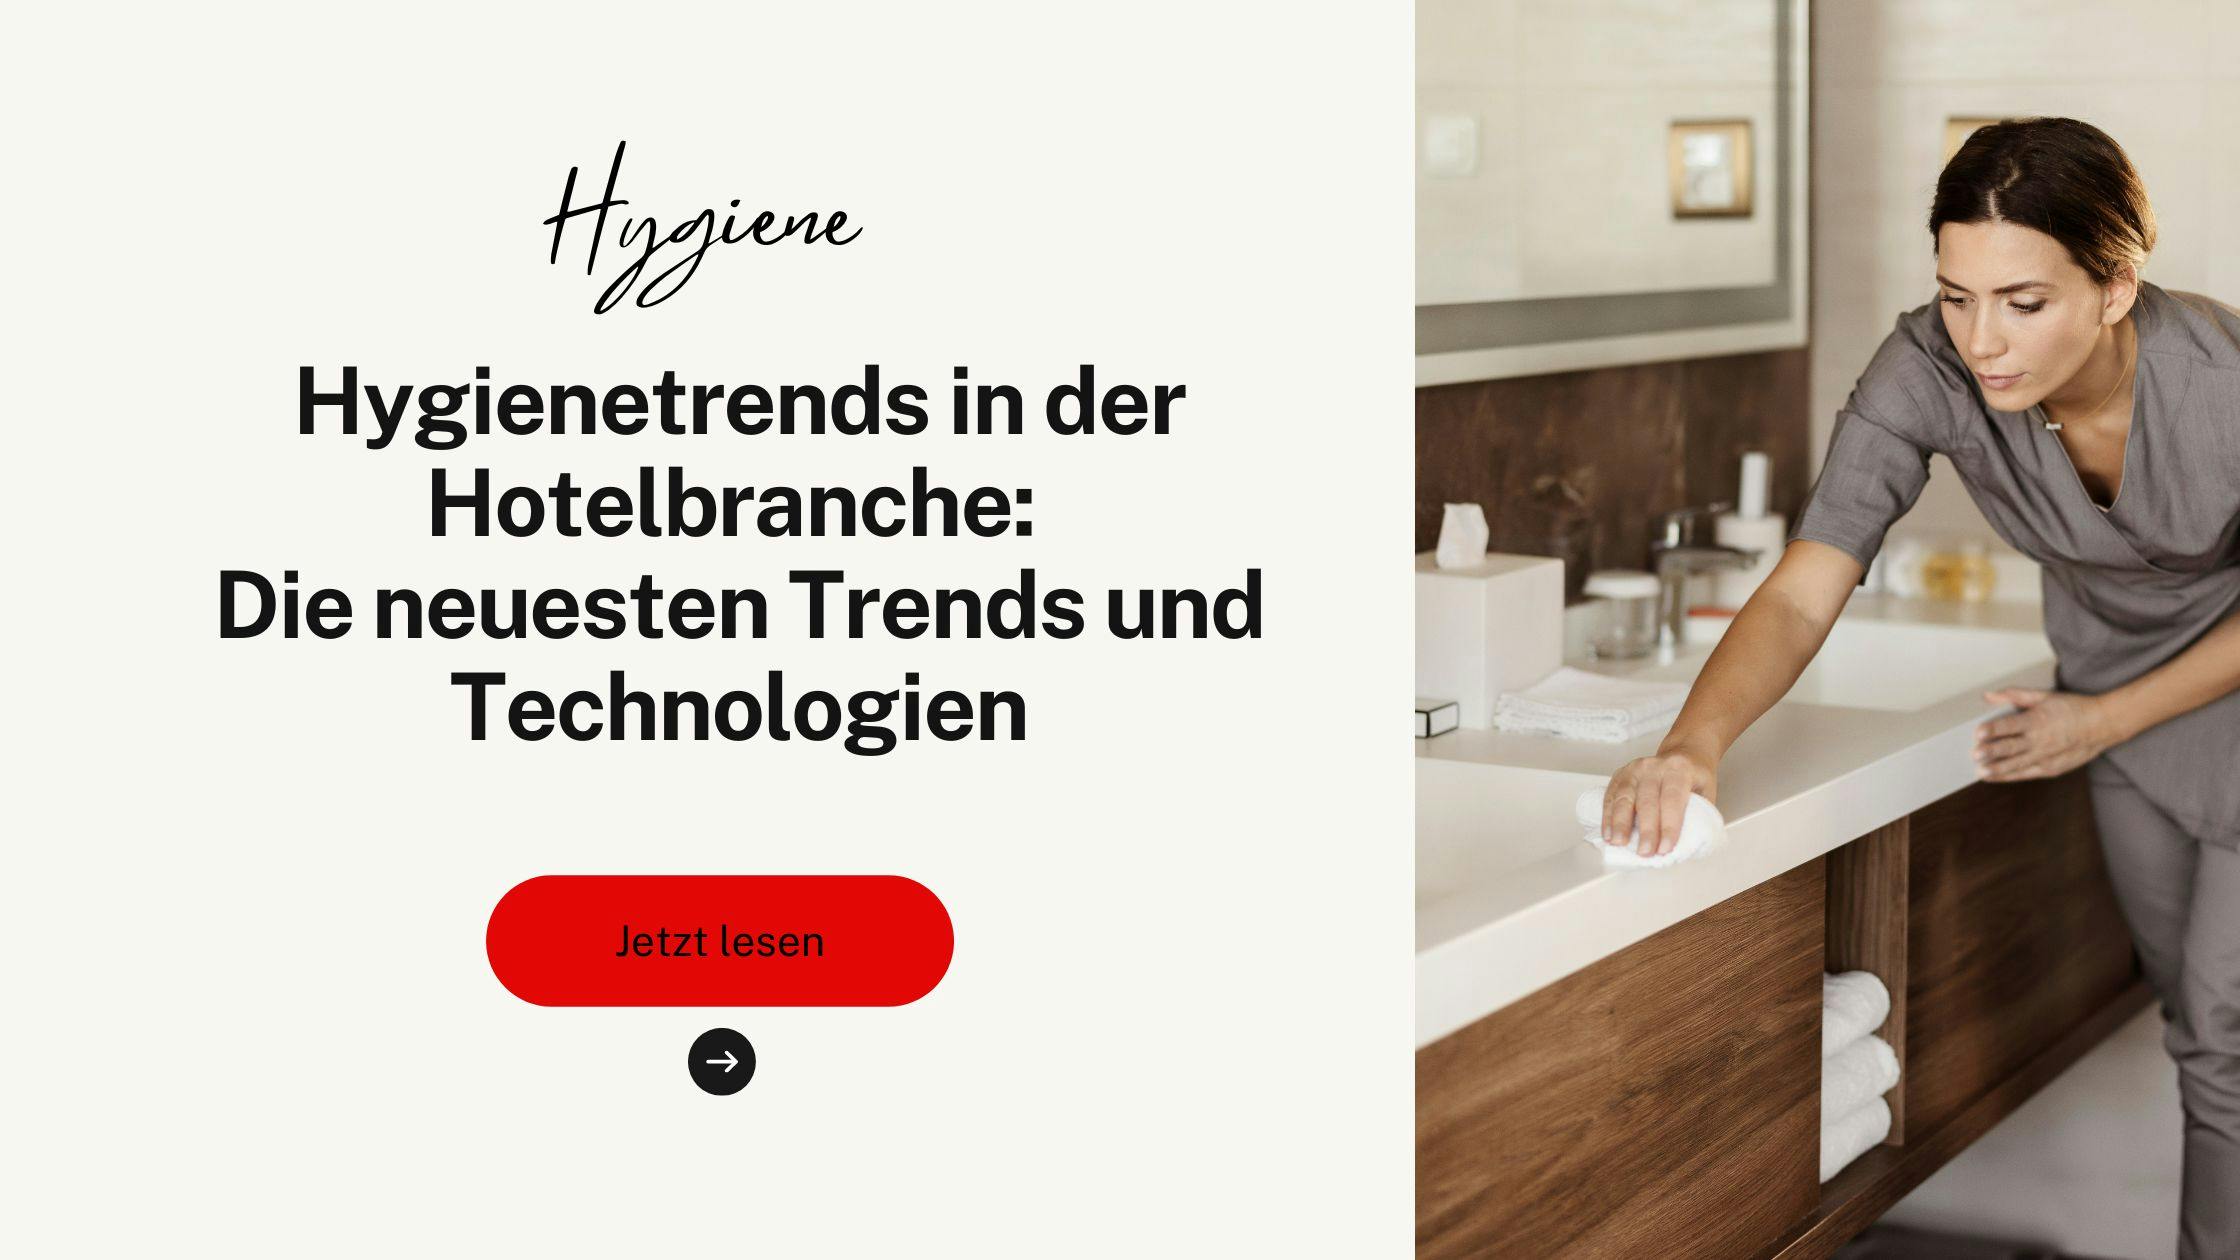 Hygienetrends in der Hotelbranche: Die neuesten Trends und Technologien in der Hotelhygiene